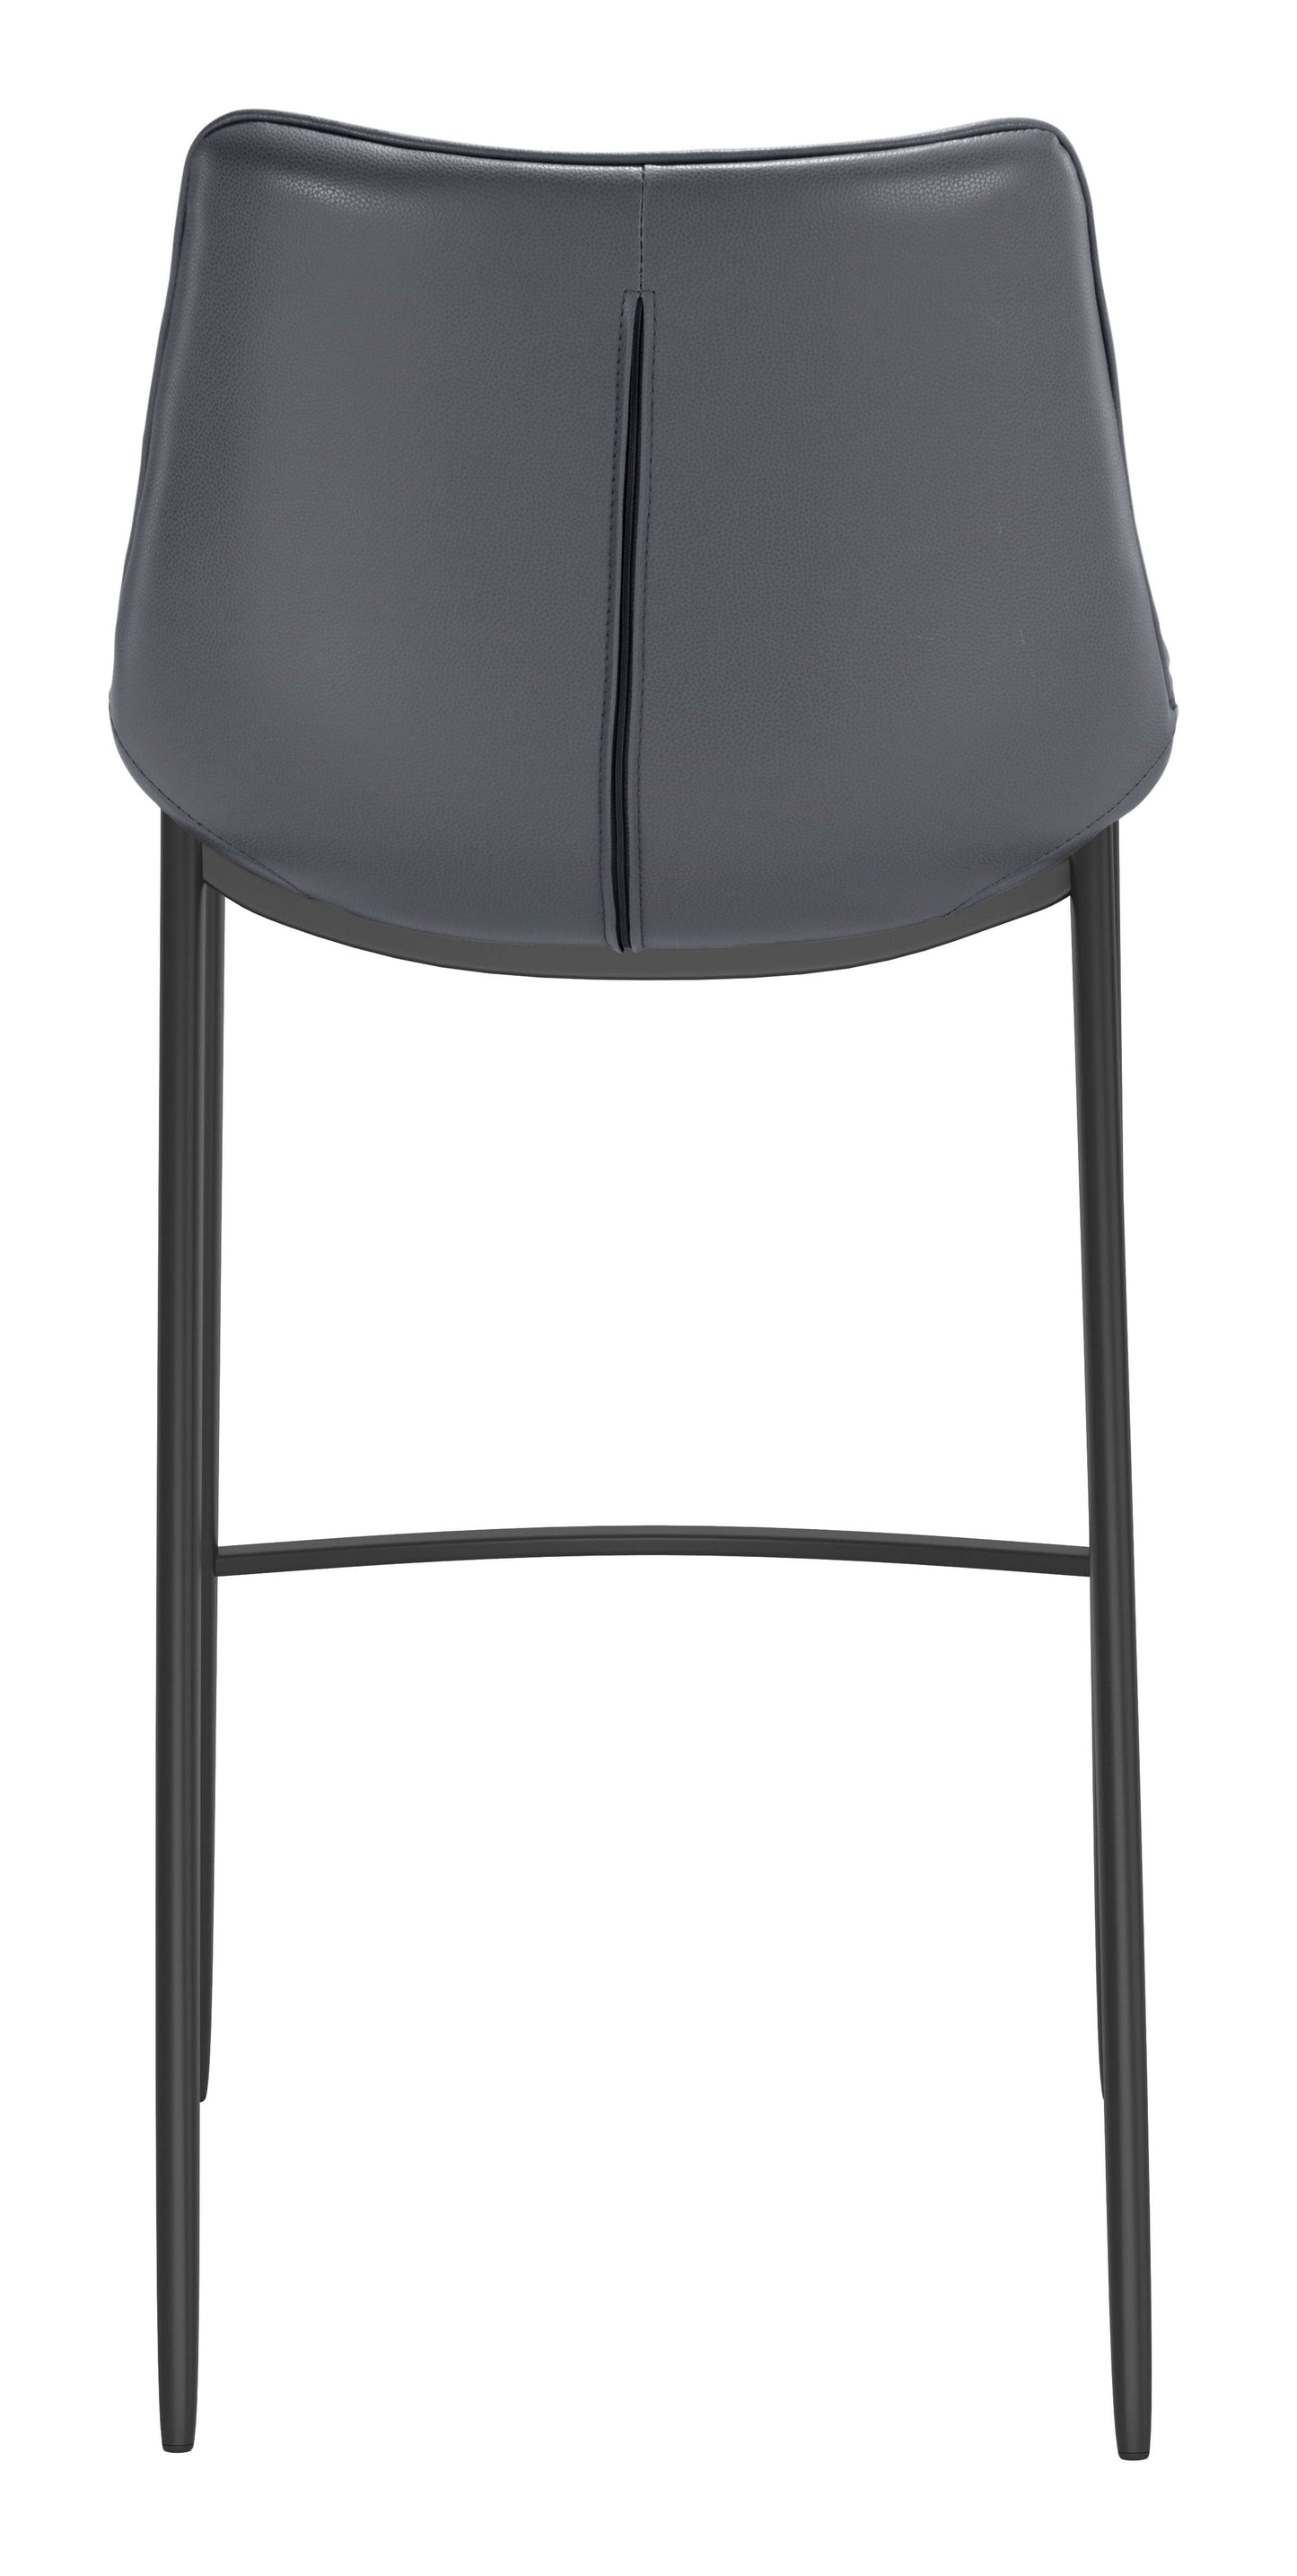 Back of modern gray bar stool 